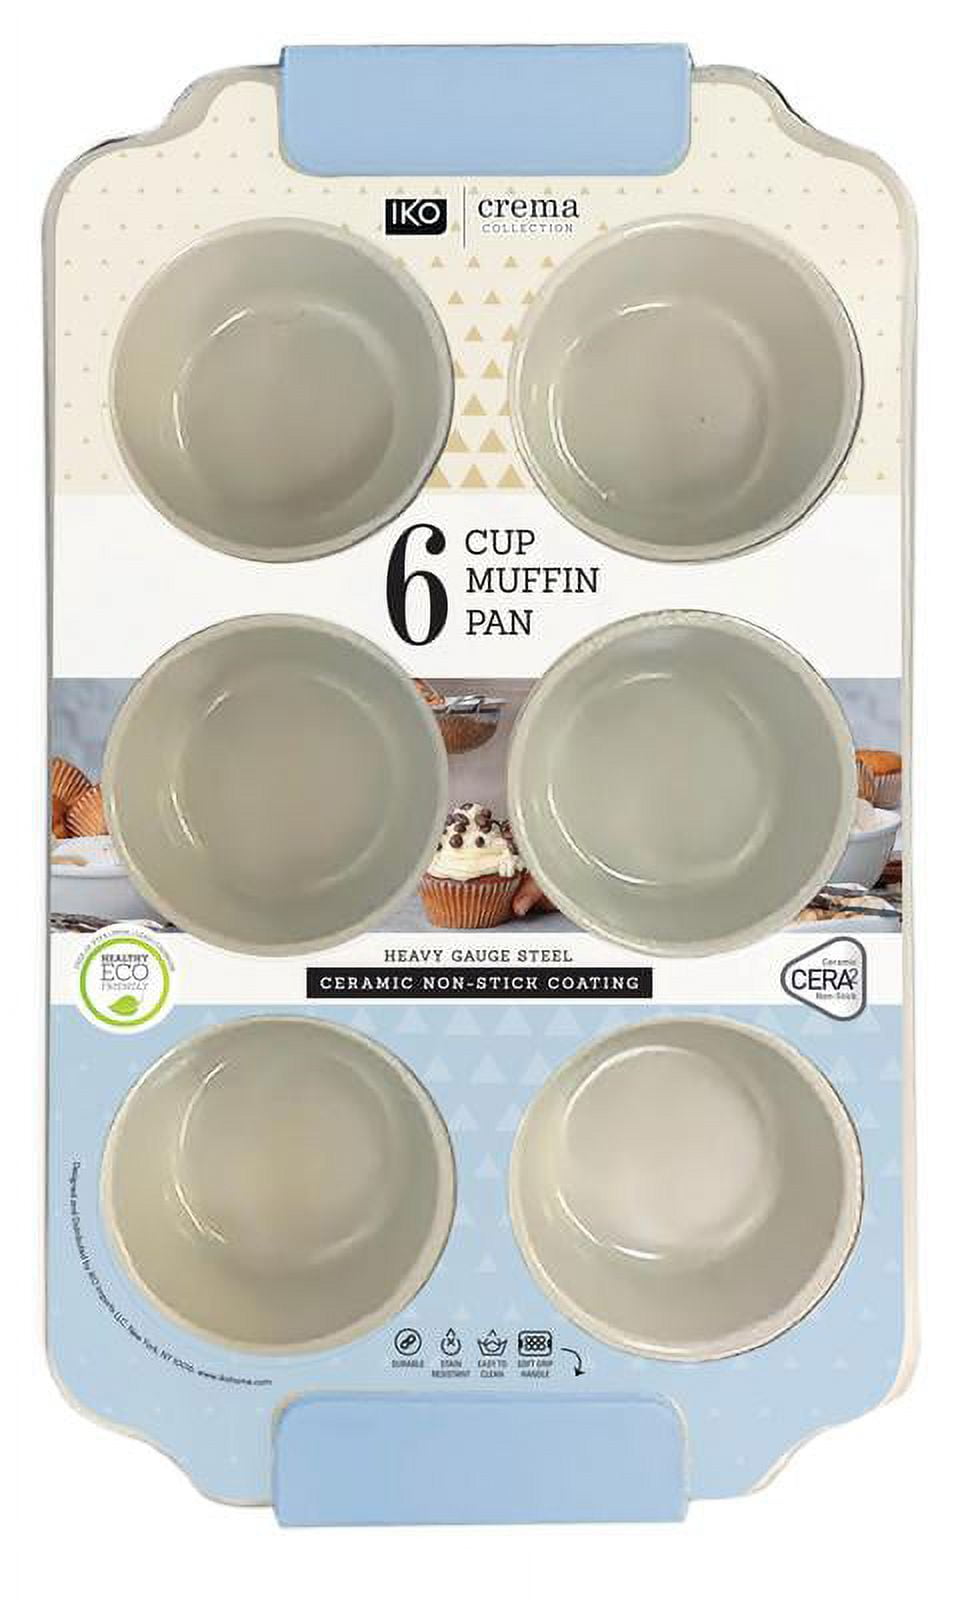 IKO Pure Diamond Ceramic Non Stick Bakeware (Black, 6 Cup Muffin Pan)